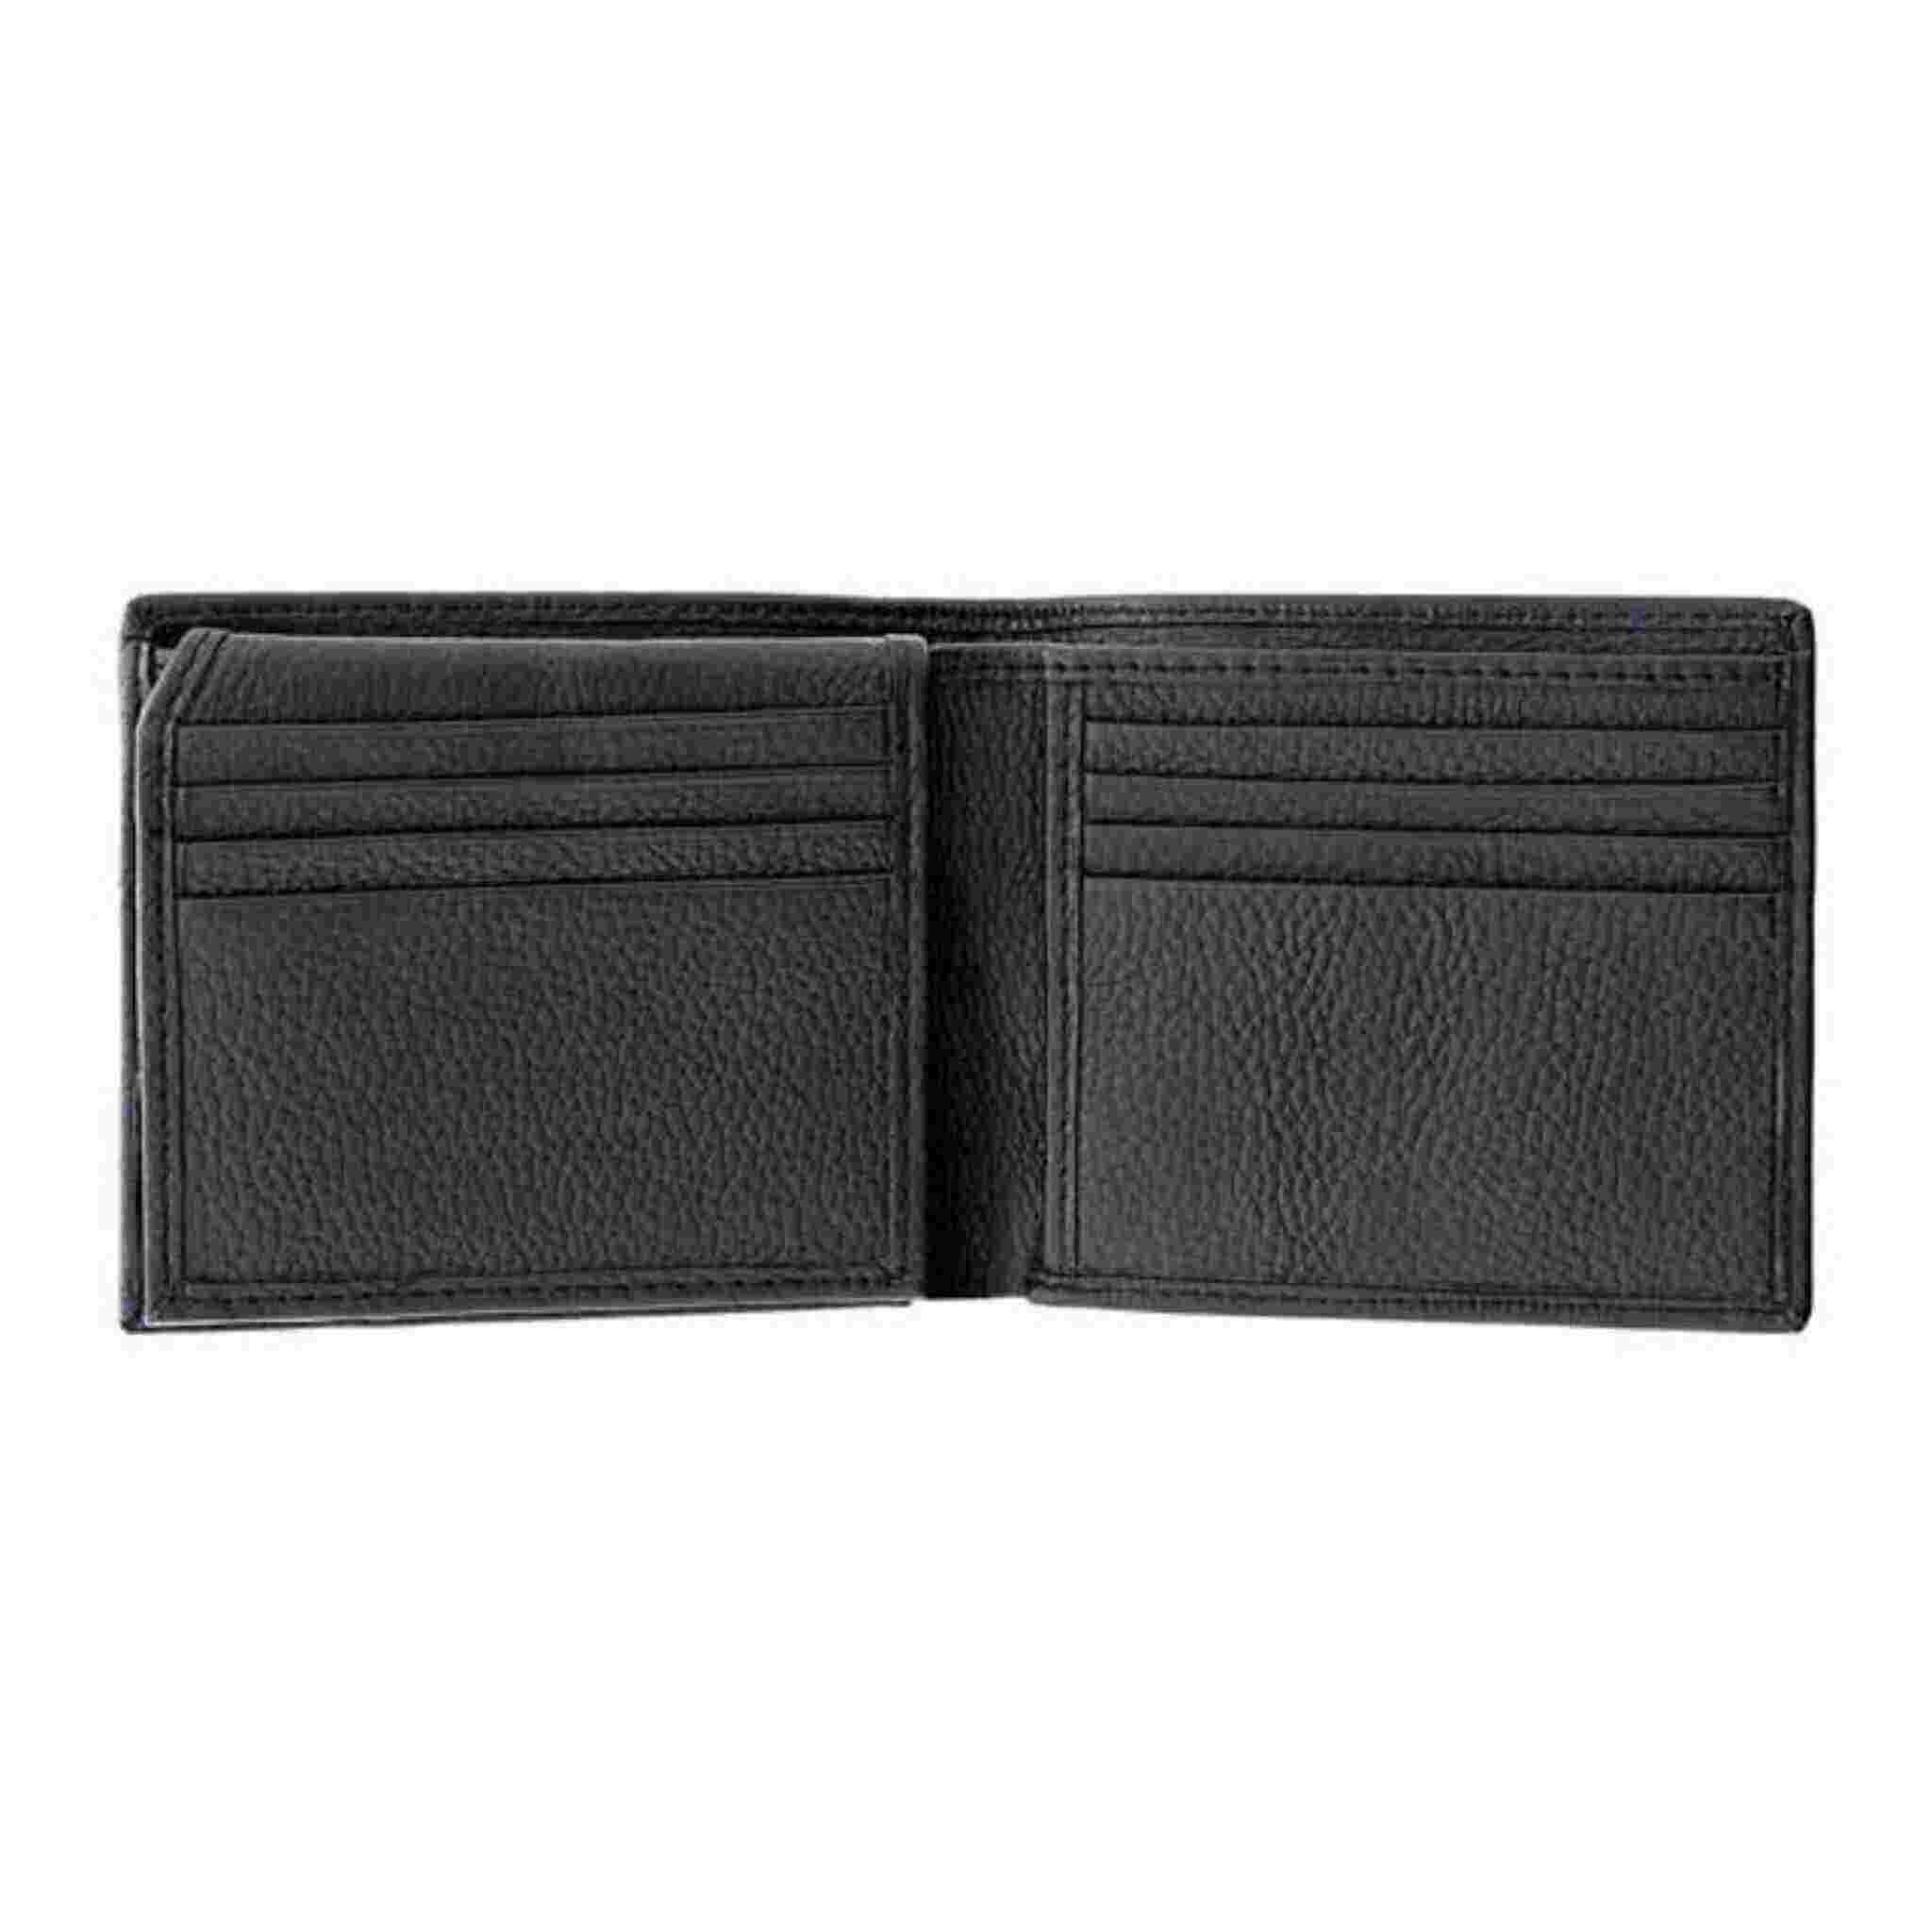 Open empty black wallet showing pockets